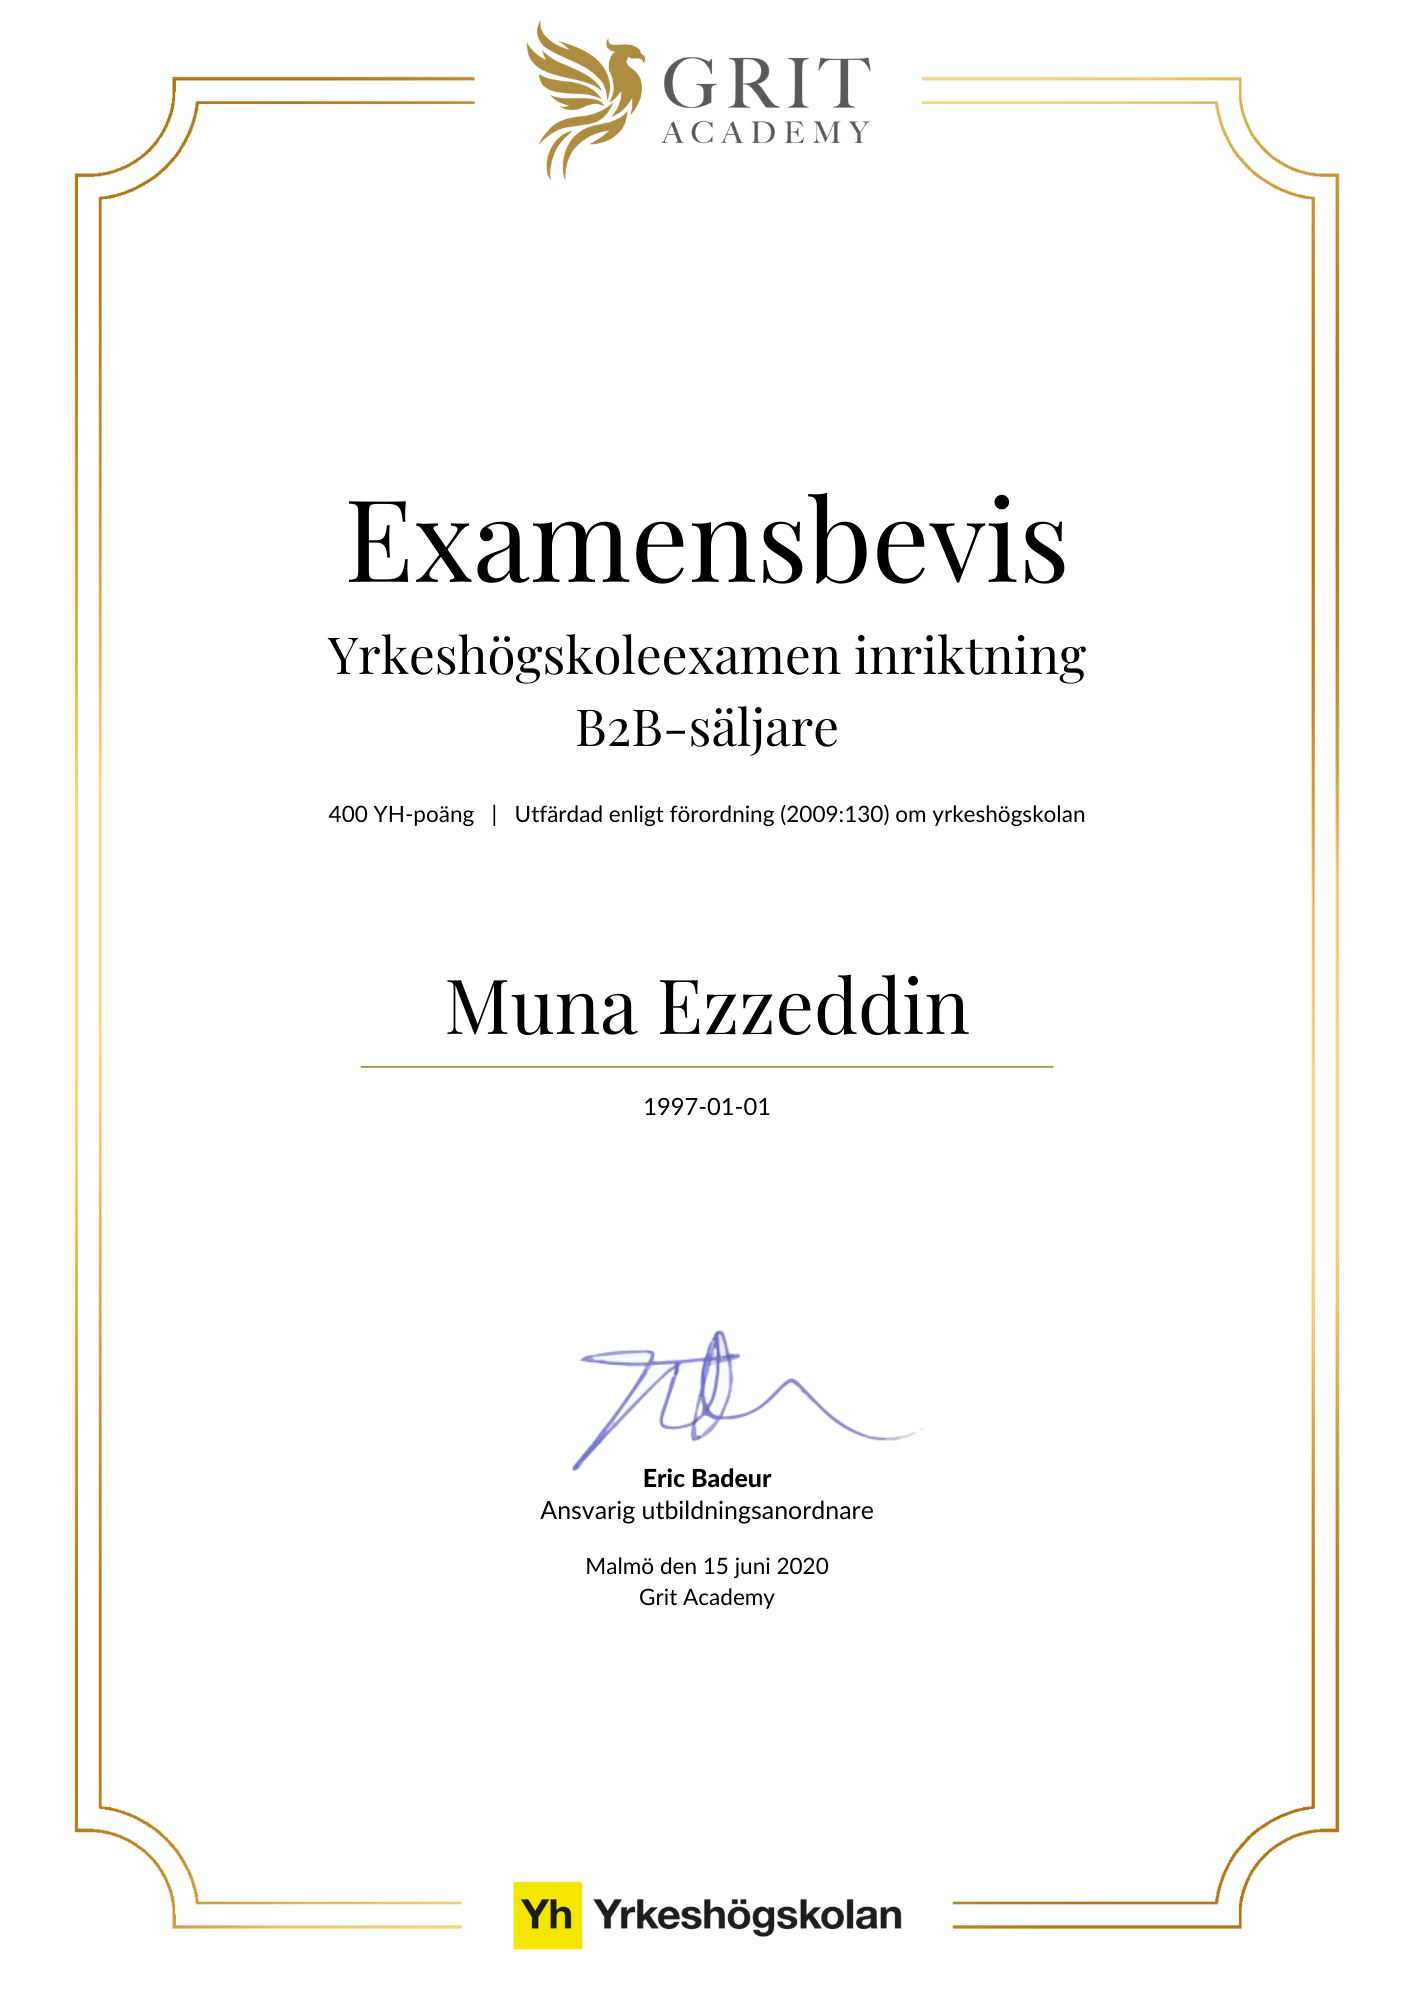 Examensbevis Muna Ezzeddin - 1